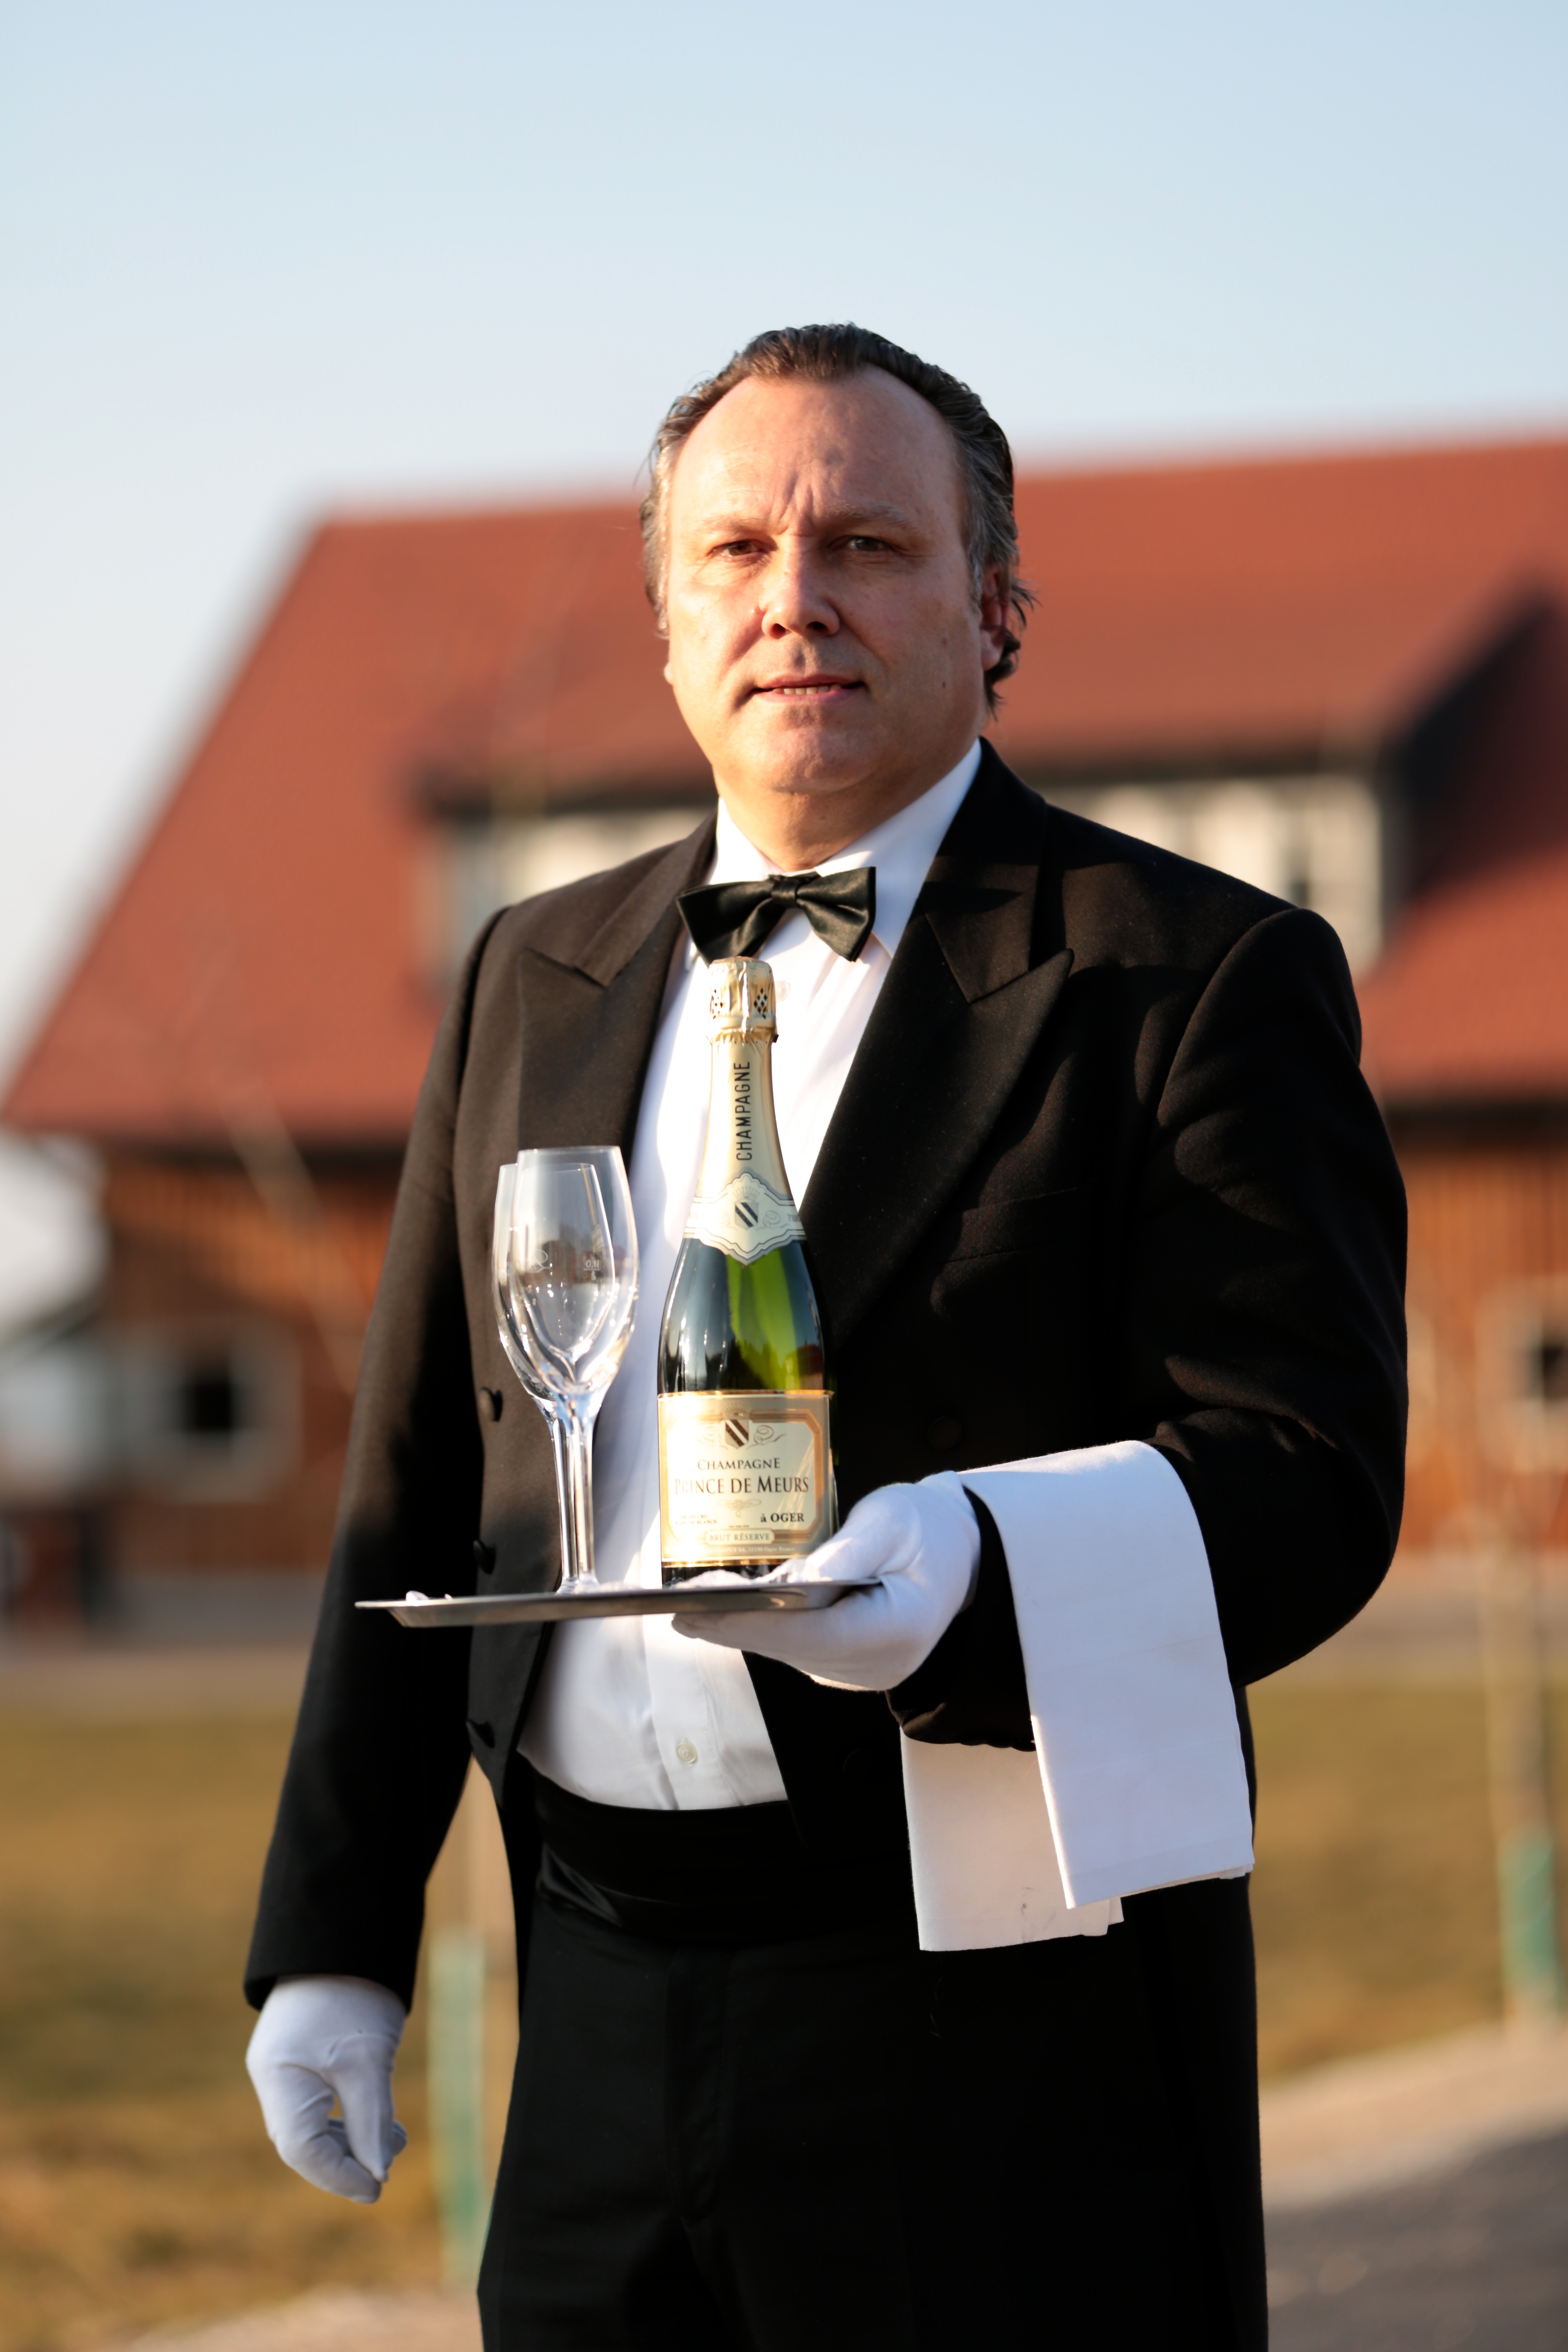 Herr August the butler